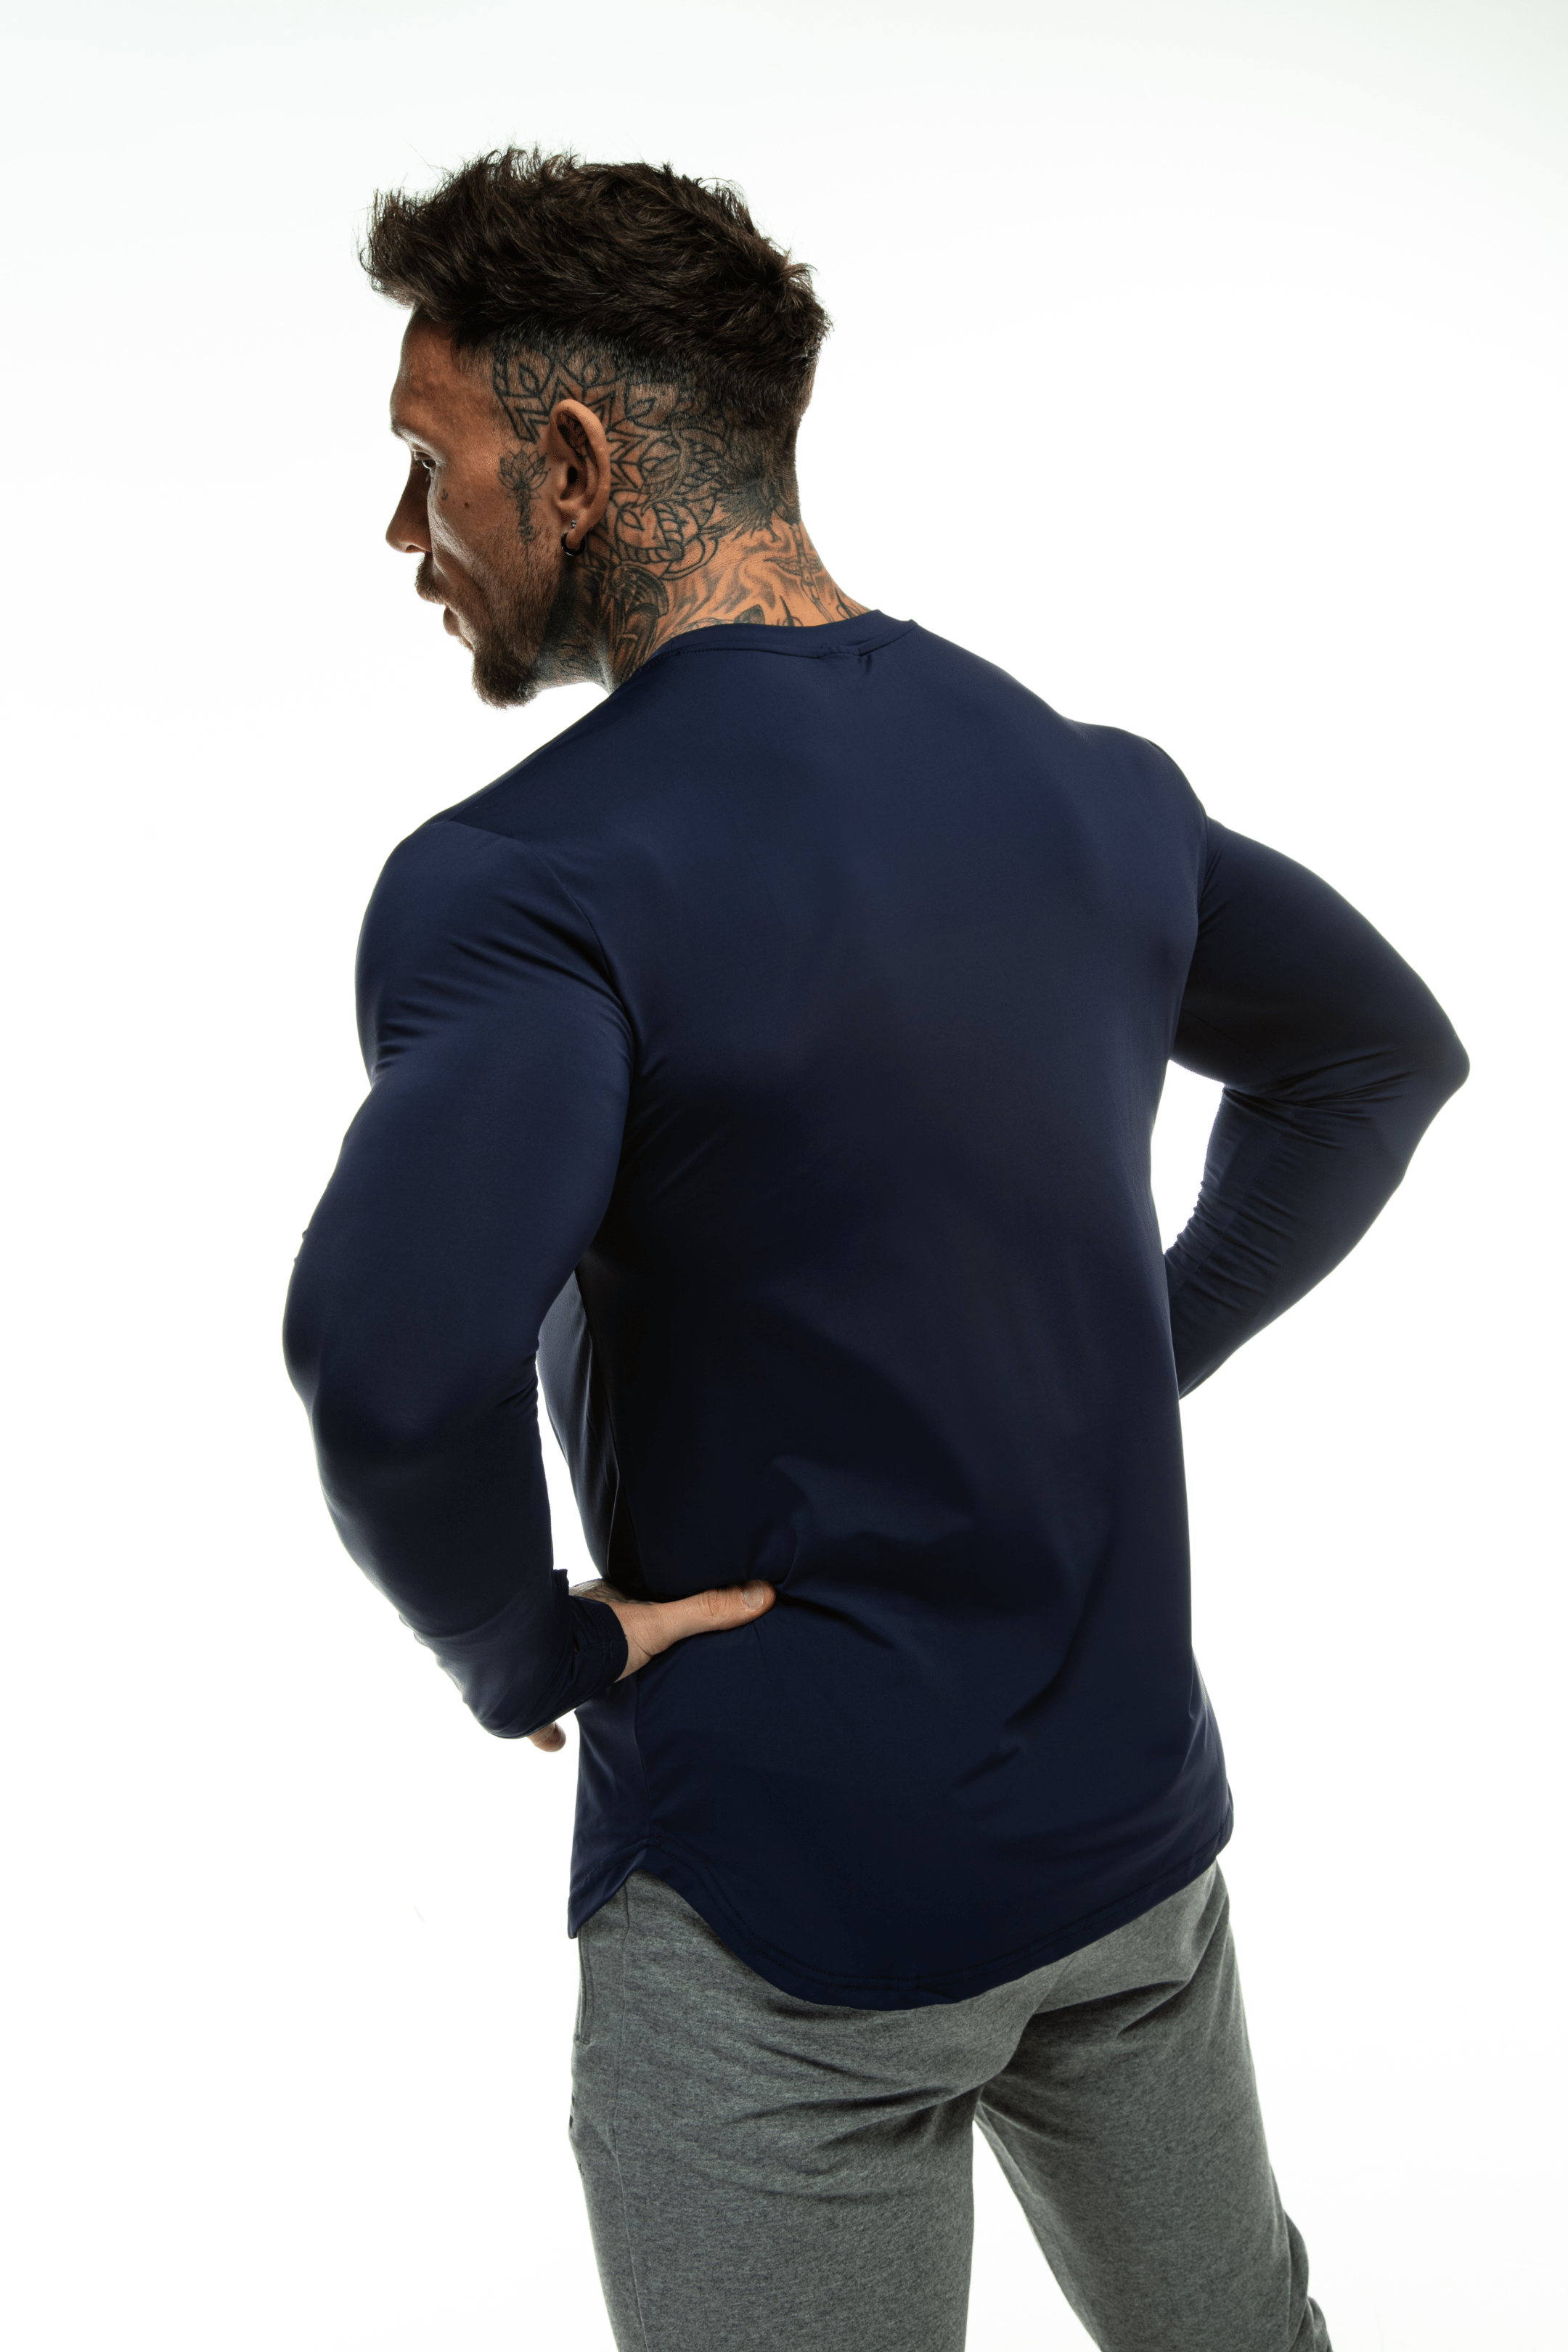 GymFreak Mens Long Sleeve Active T-shirt - Blue